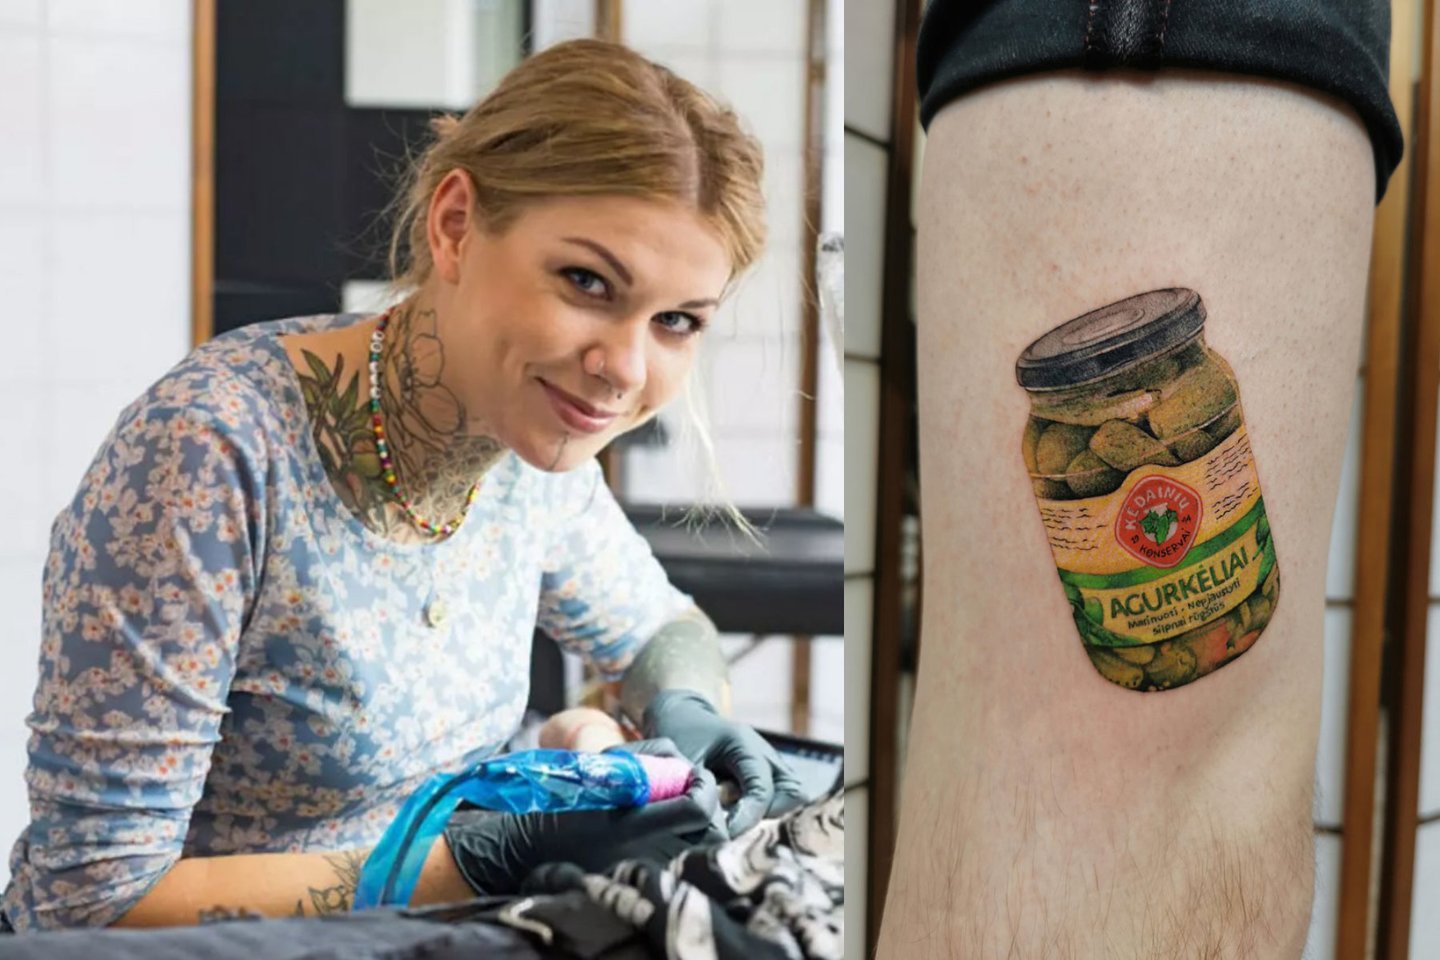 Klaipėdietė tatuiruočių meistrė Gerda Vališinaitė išgarsėjo, kai ištatuiravo drąsią, realistišką, 8 valandų darbo pareikalavusią „Kėdainių konservų“ marinuotų agurkėlių stiklainio tatuiruotę.<br>Lrytas.lt koliažas.